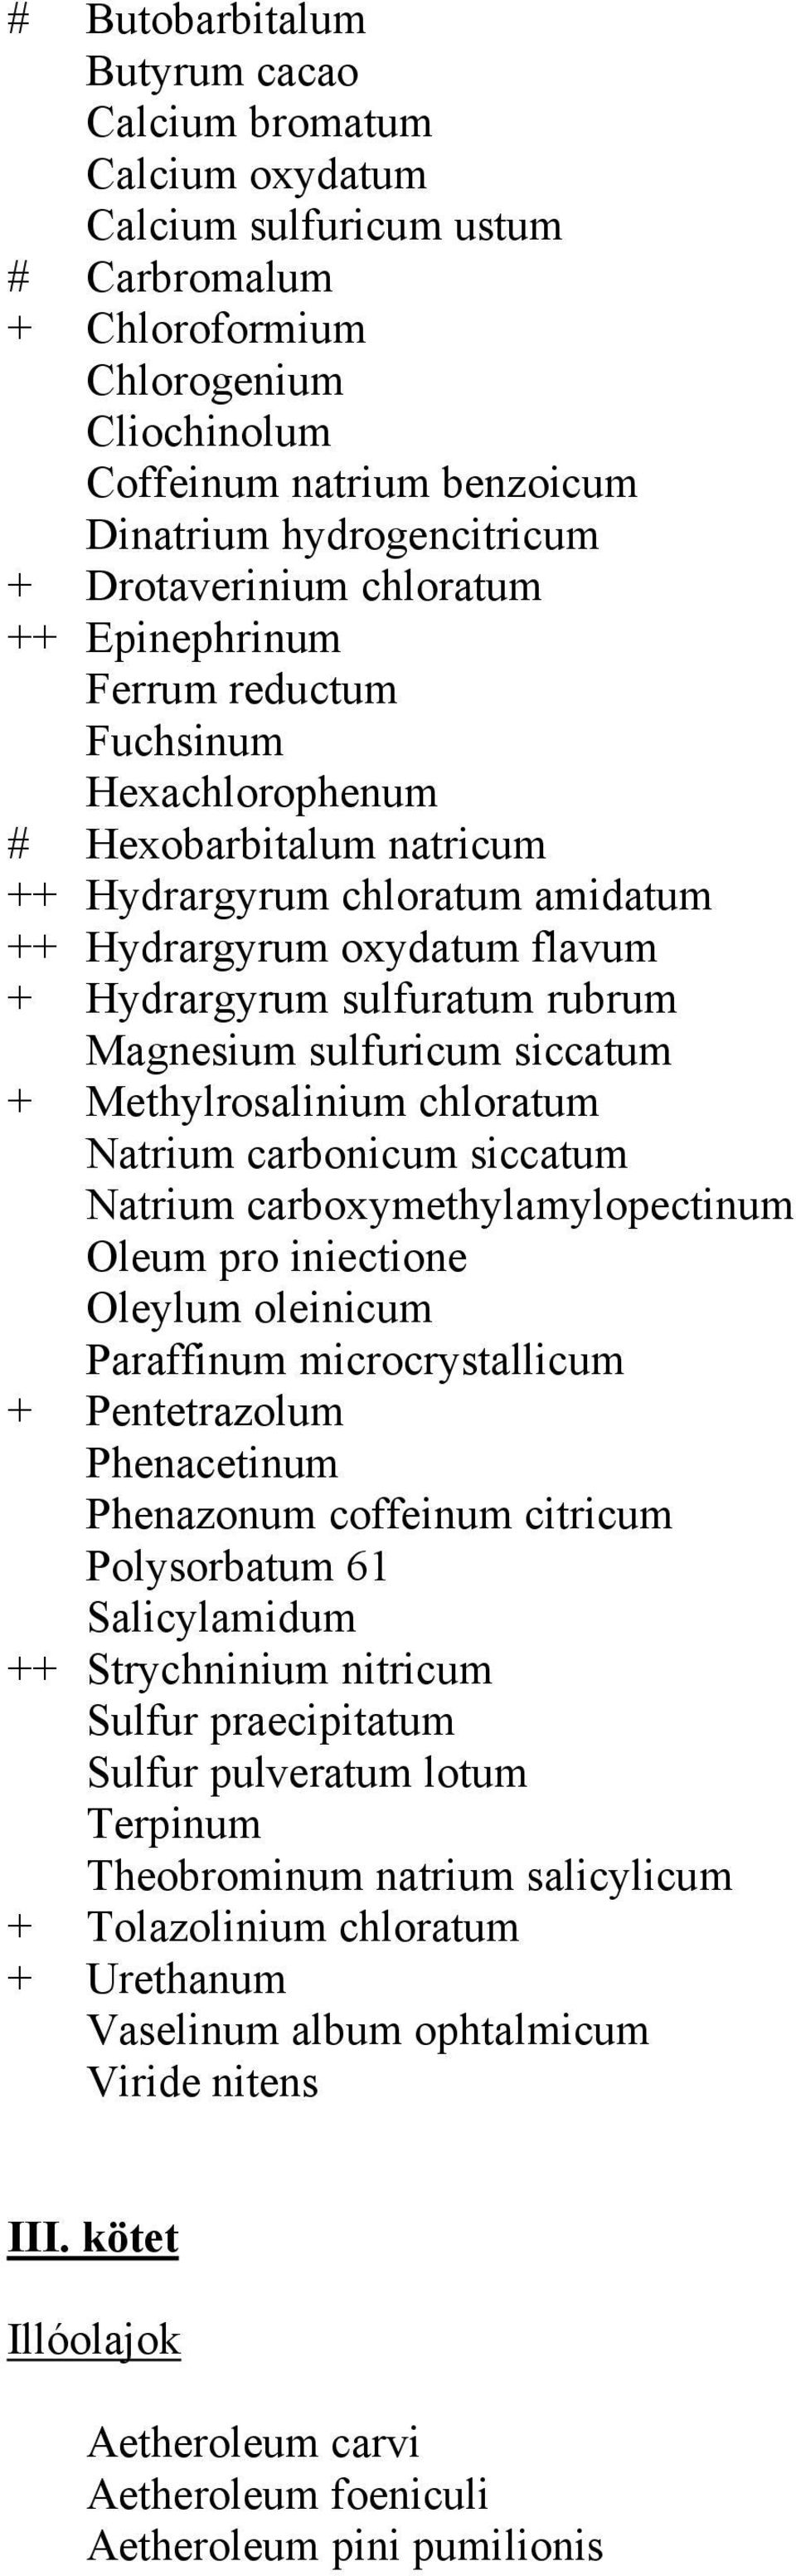 Hydrargyrum sulfuratum rubrum Magnesium sulfuricum siccatum + Methylrosalinium chloratum Natrium carbonicum siccatum Natrium carboxymethylamylopectinum Oleum pro iniectione Oleylum oleinicum